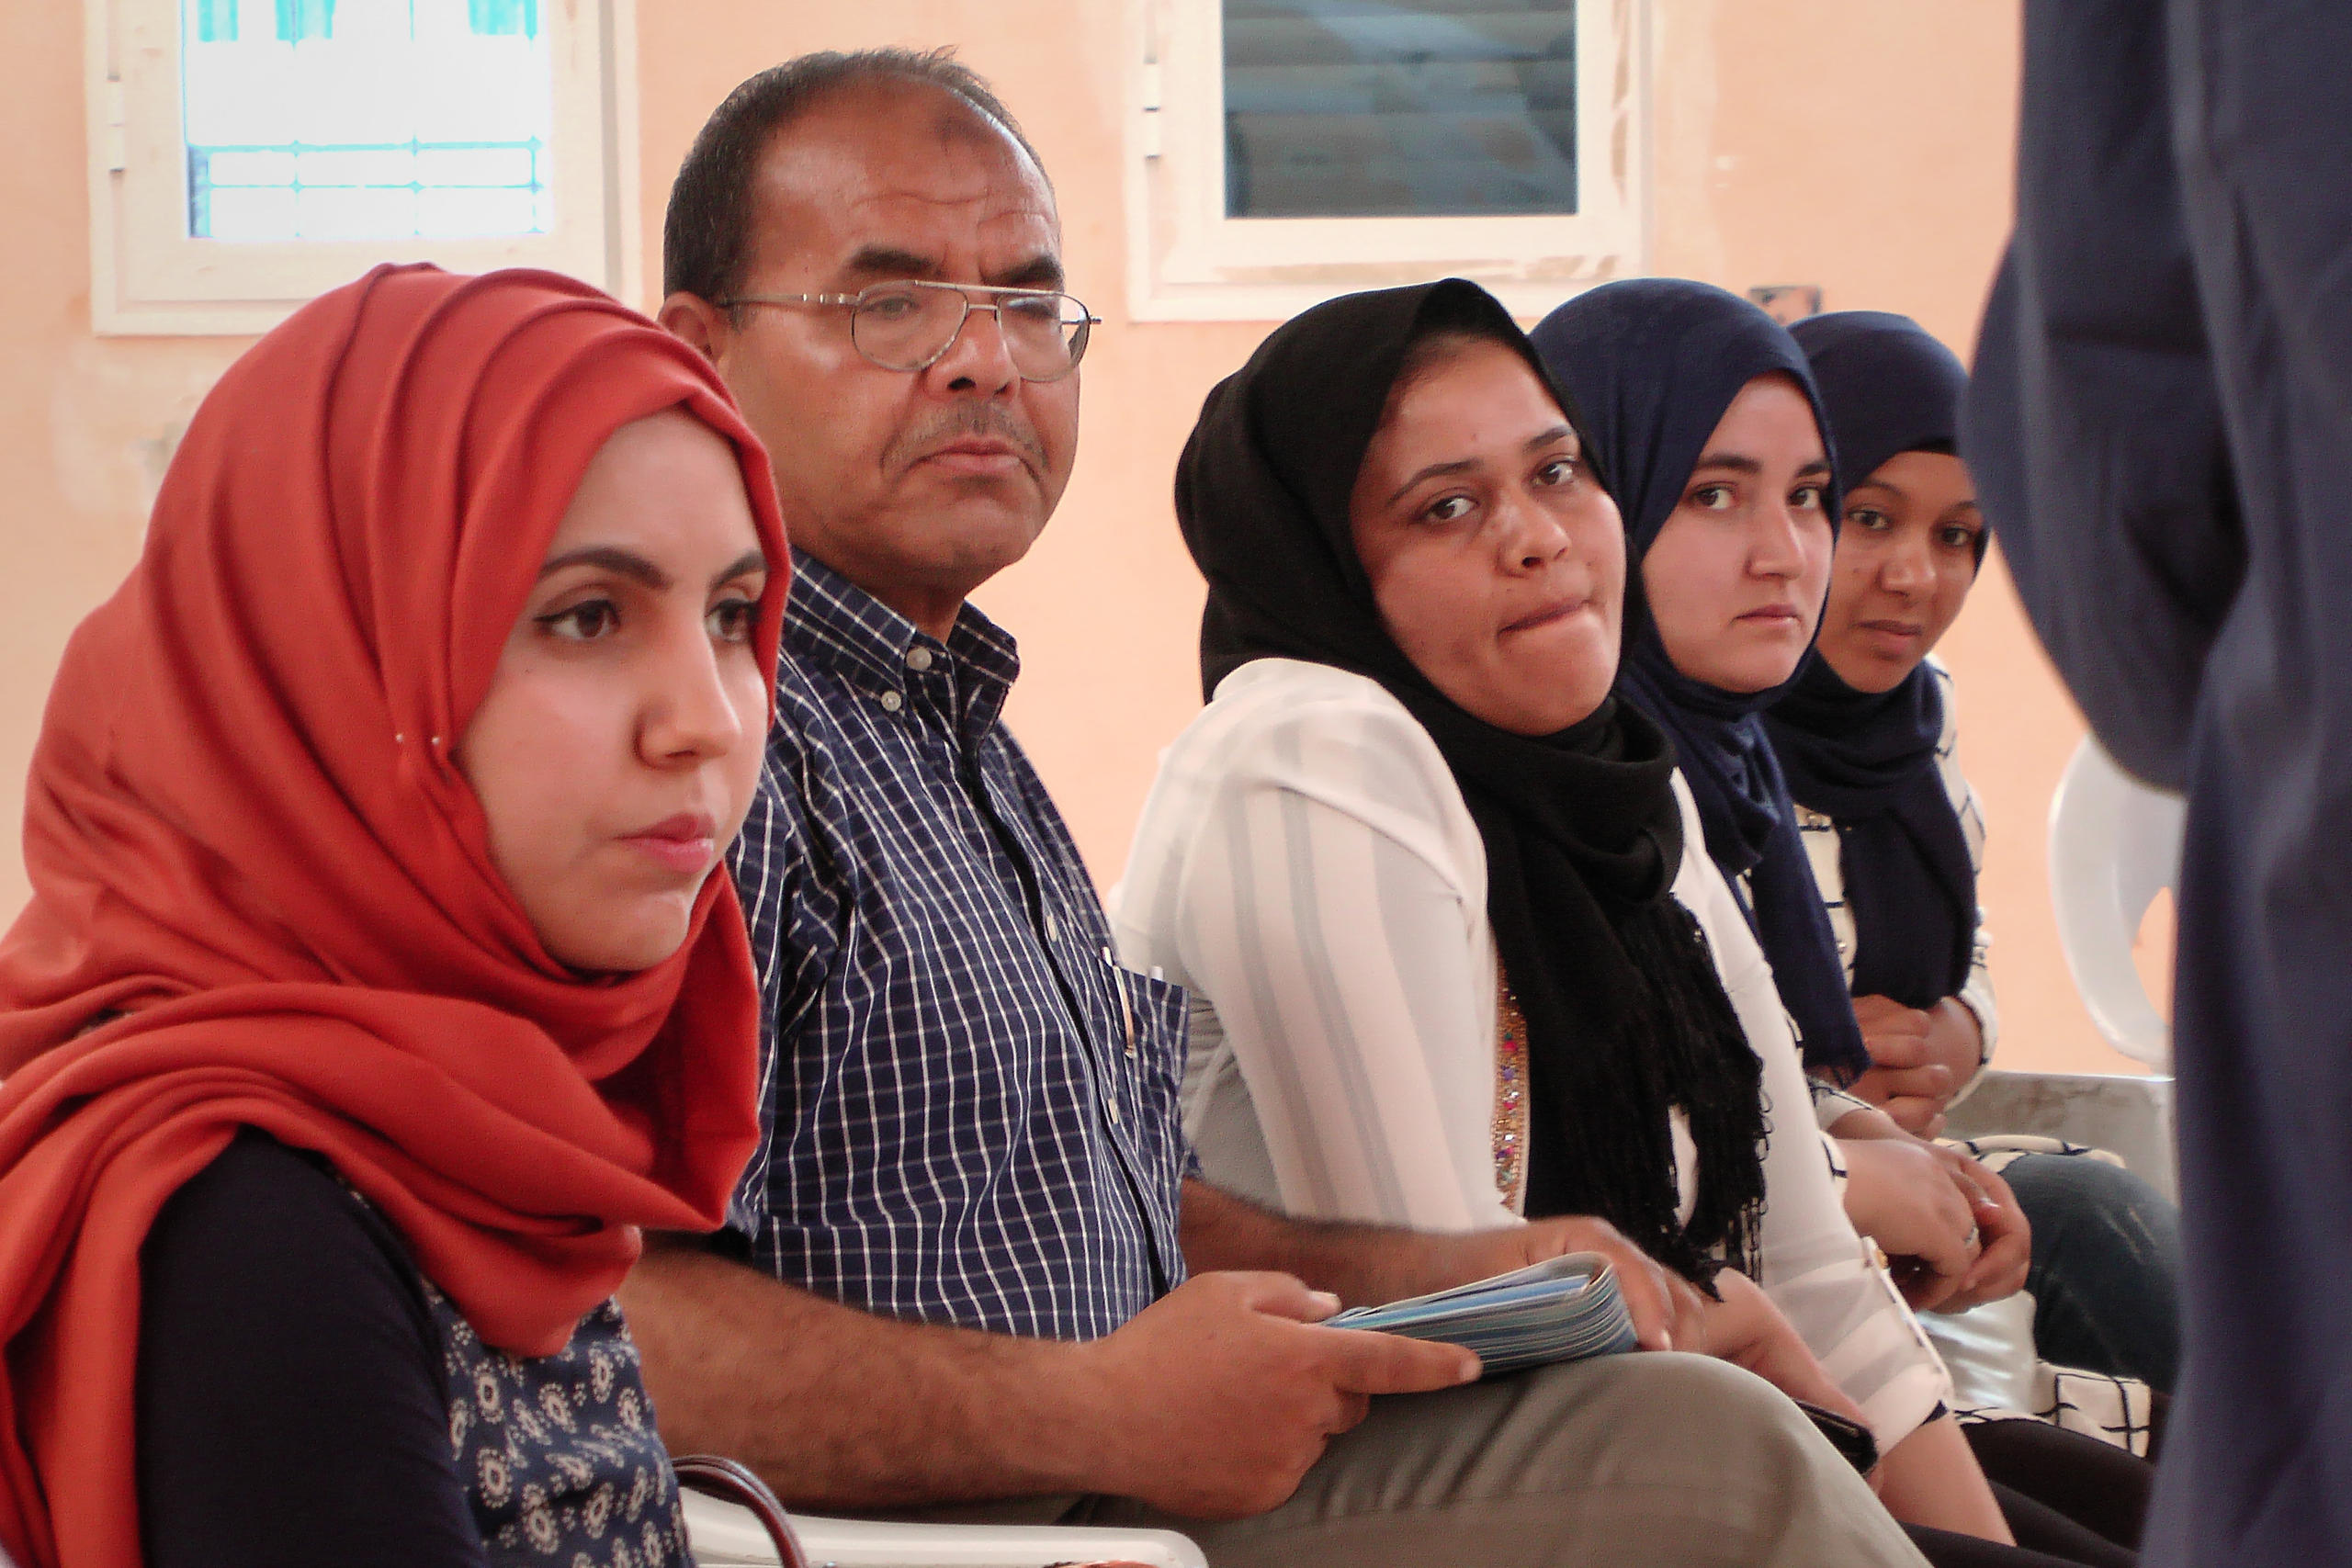 نساء ورجال مشاركون في اجتماع لممثلي المدني في محافظة قفصة جنوب غرب تونس